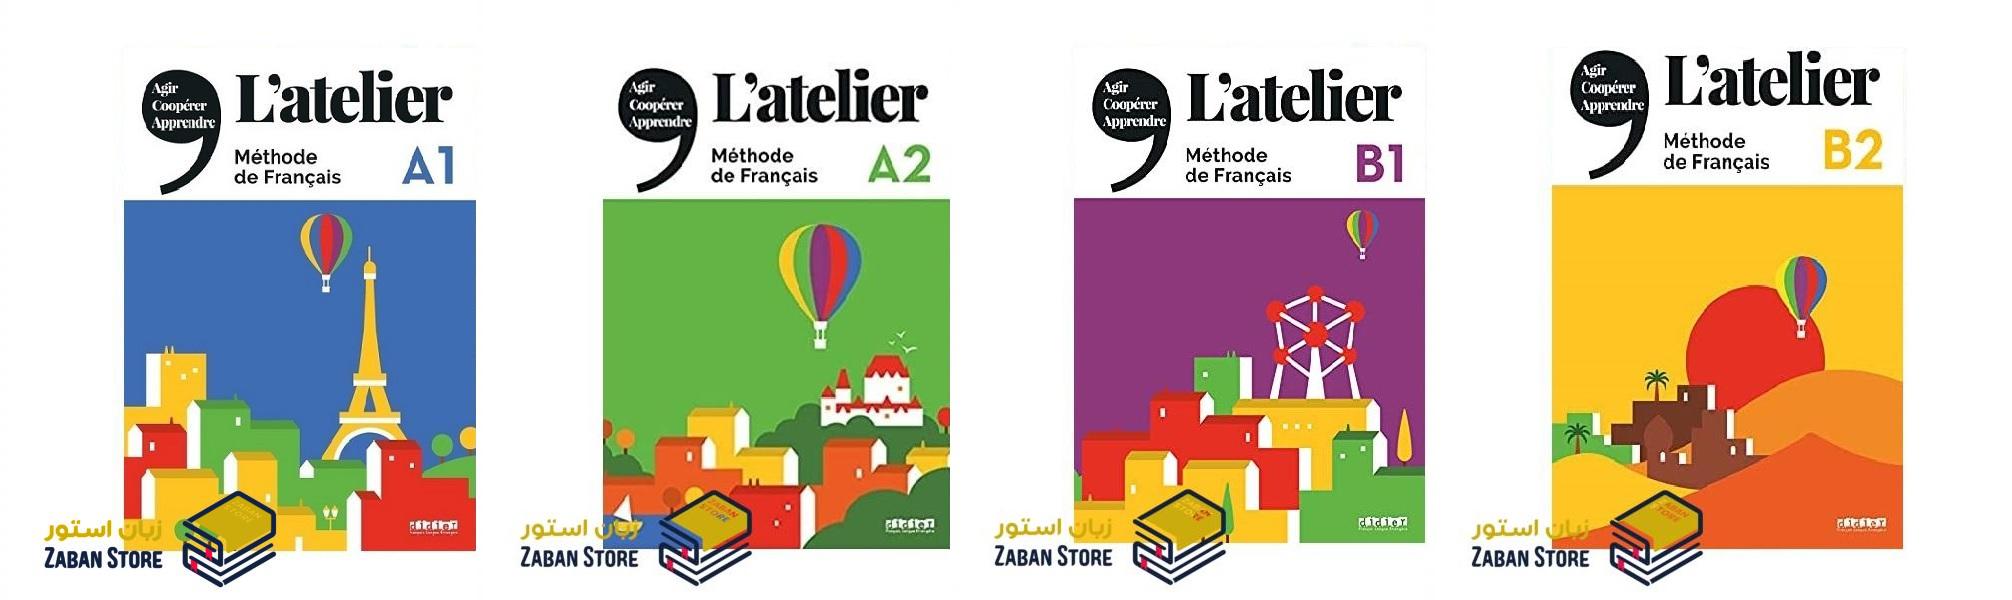 خرید کتاب زبان فرانسوی | فروشگاه اینترنتی کتاب زبان فرانسوی | L'atelier کتاب های آموزش زبان فرانسوی | مجموعه کتاب های آموزش زبان فرانسوی آتلیر